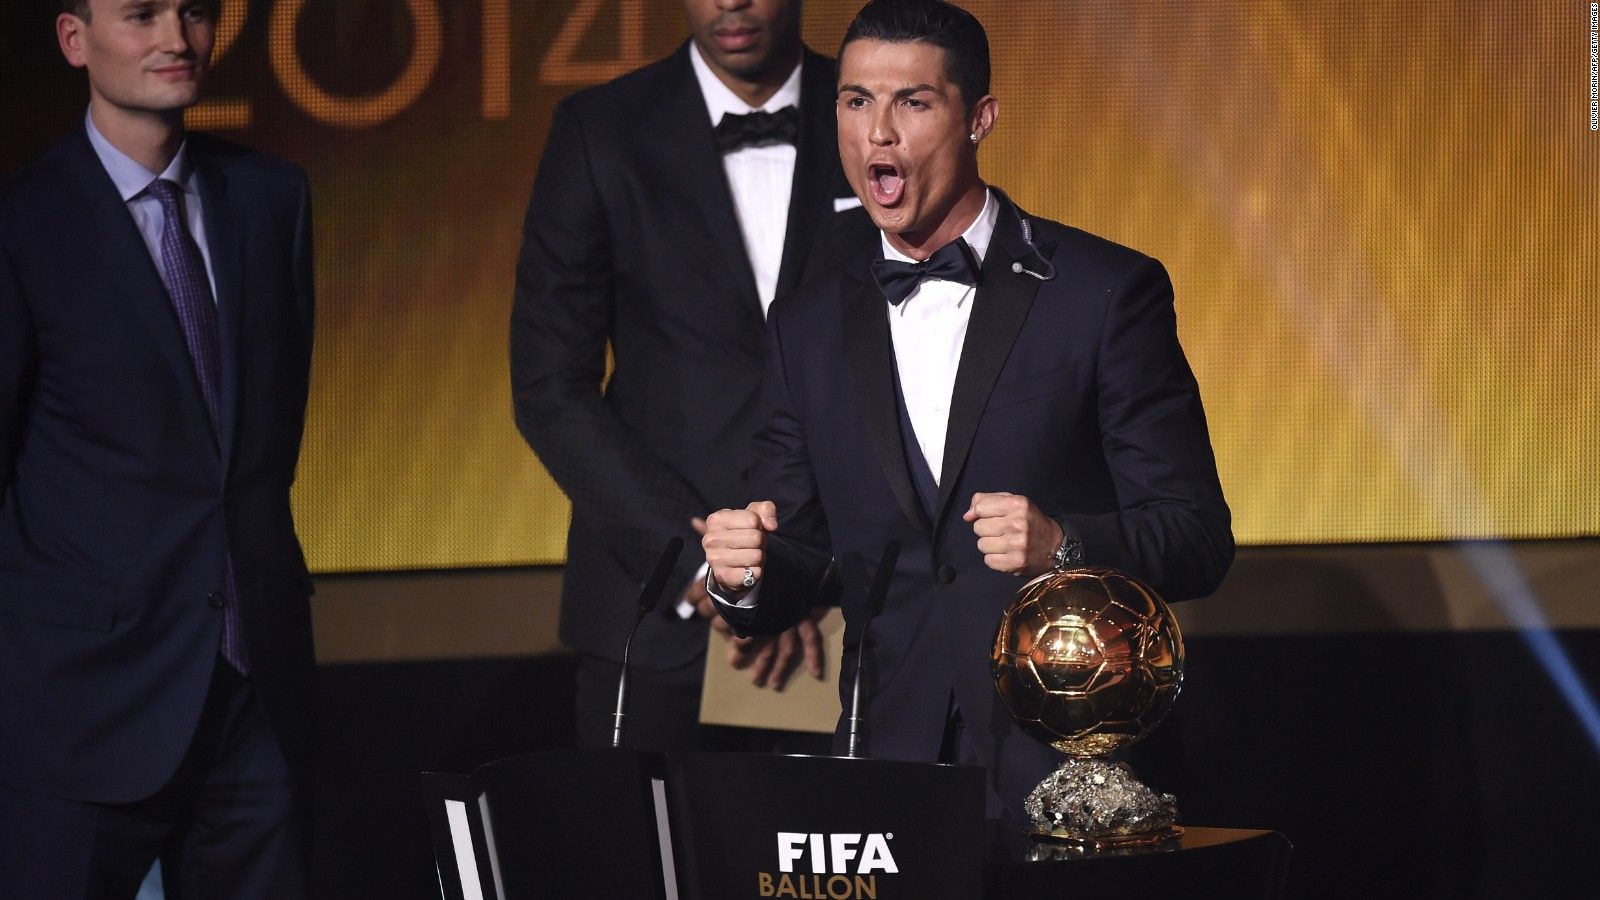 Cristiano Ronaldo wins Ballon d'Or 2014